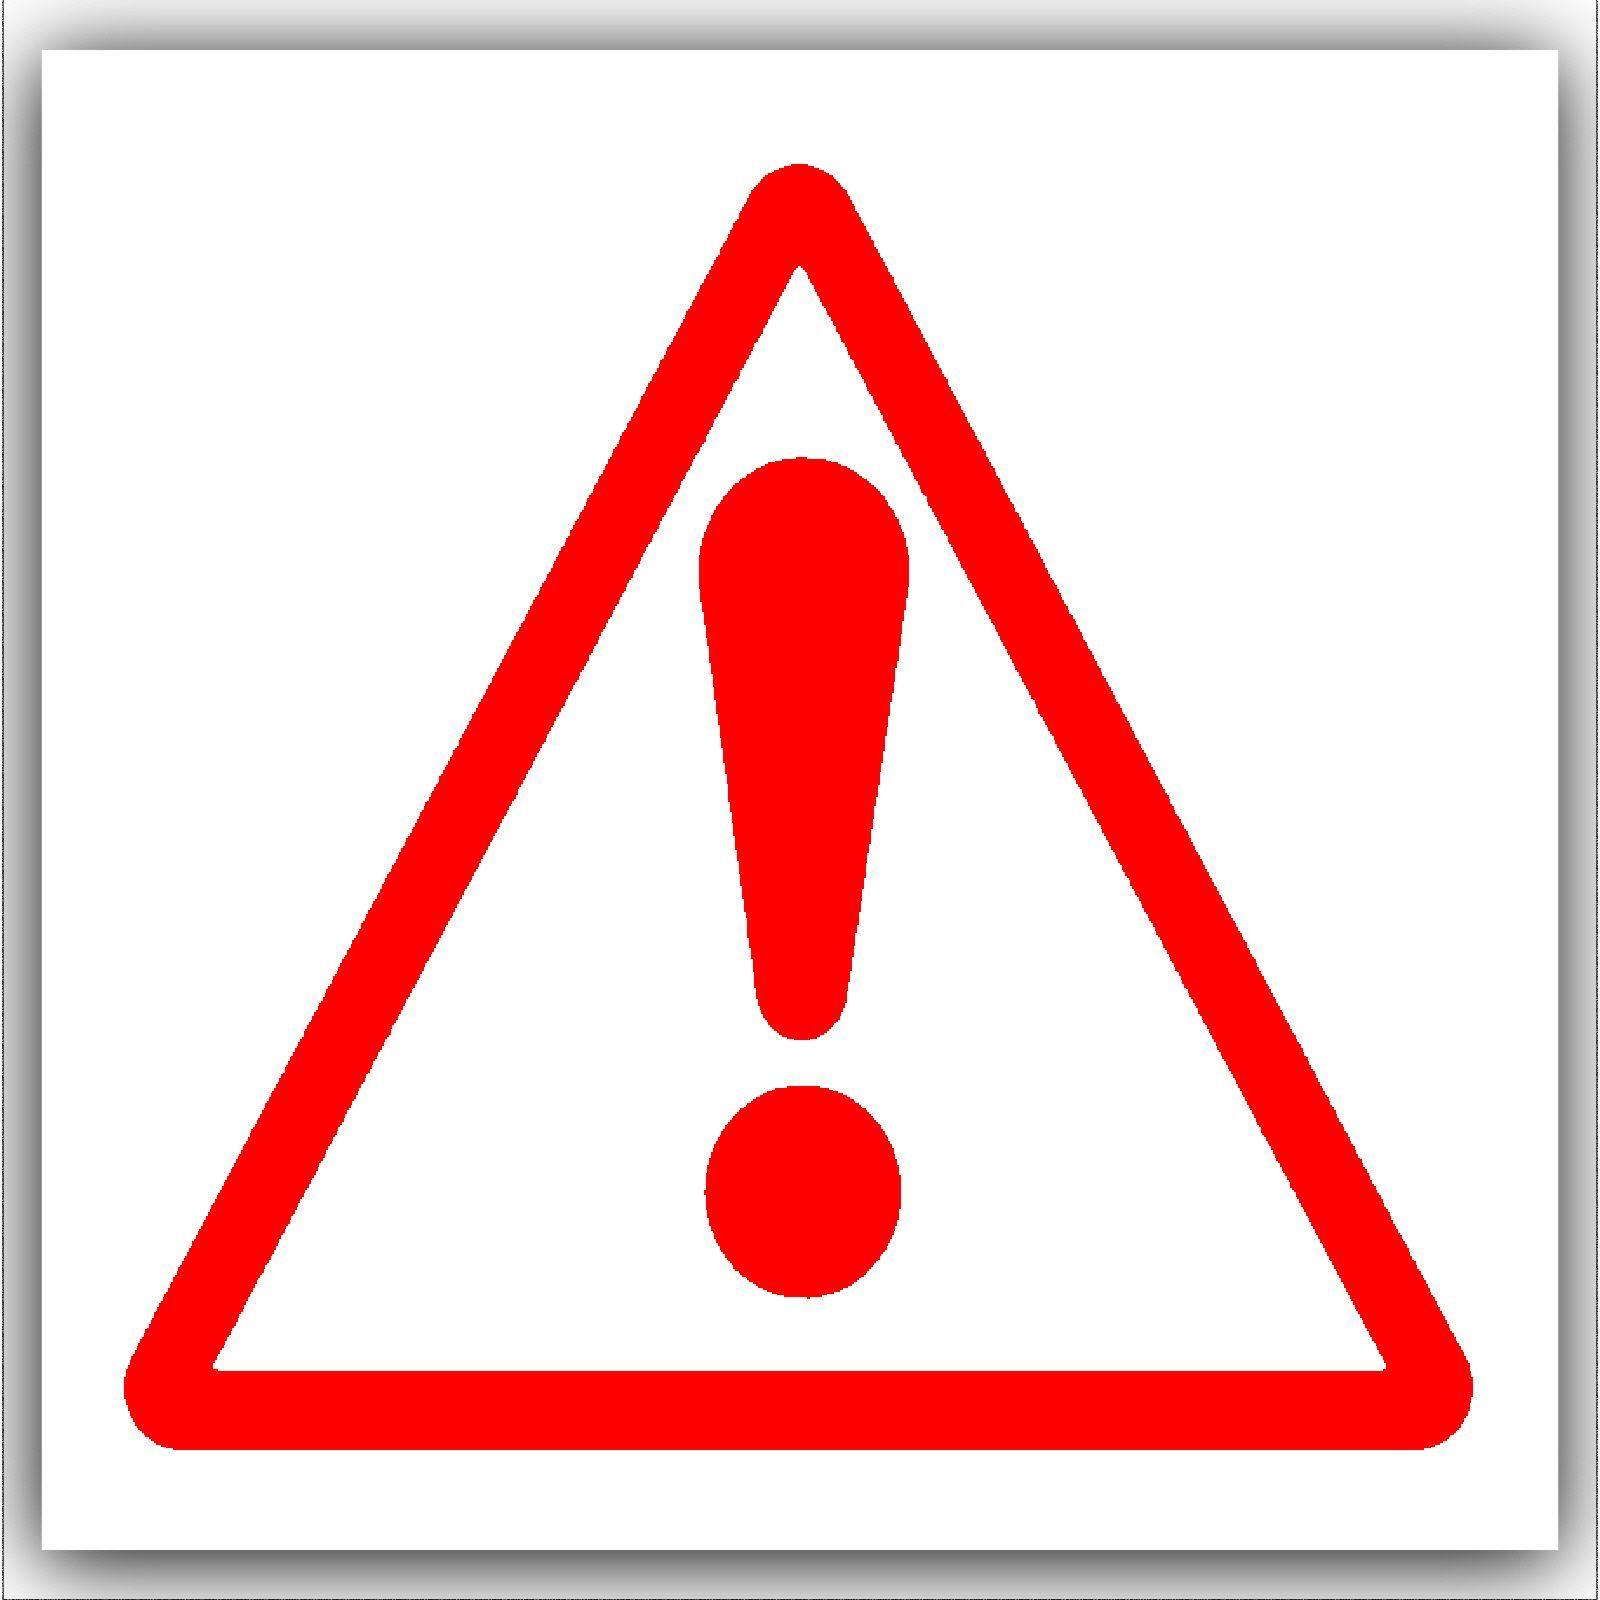 Red Symbol Logo - 1 x Caution Warning Danger Symbol-Red on White External Self ...